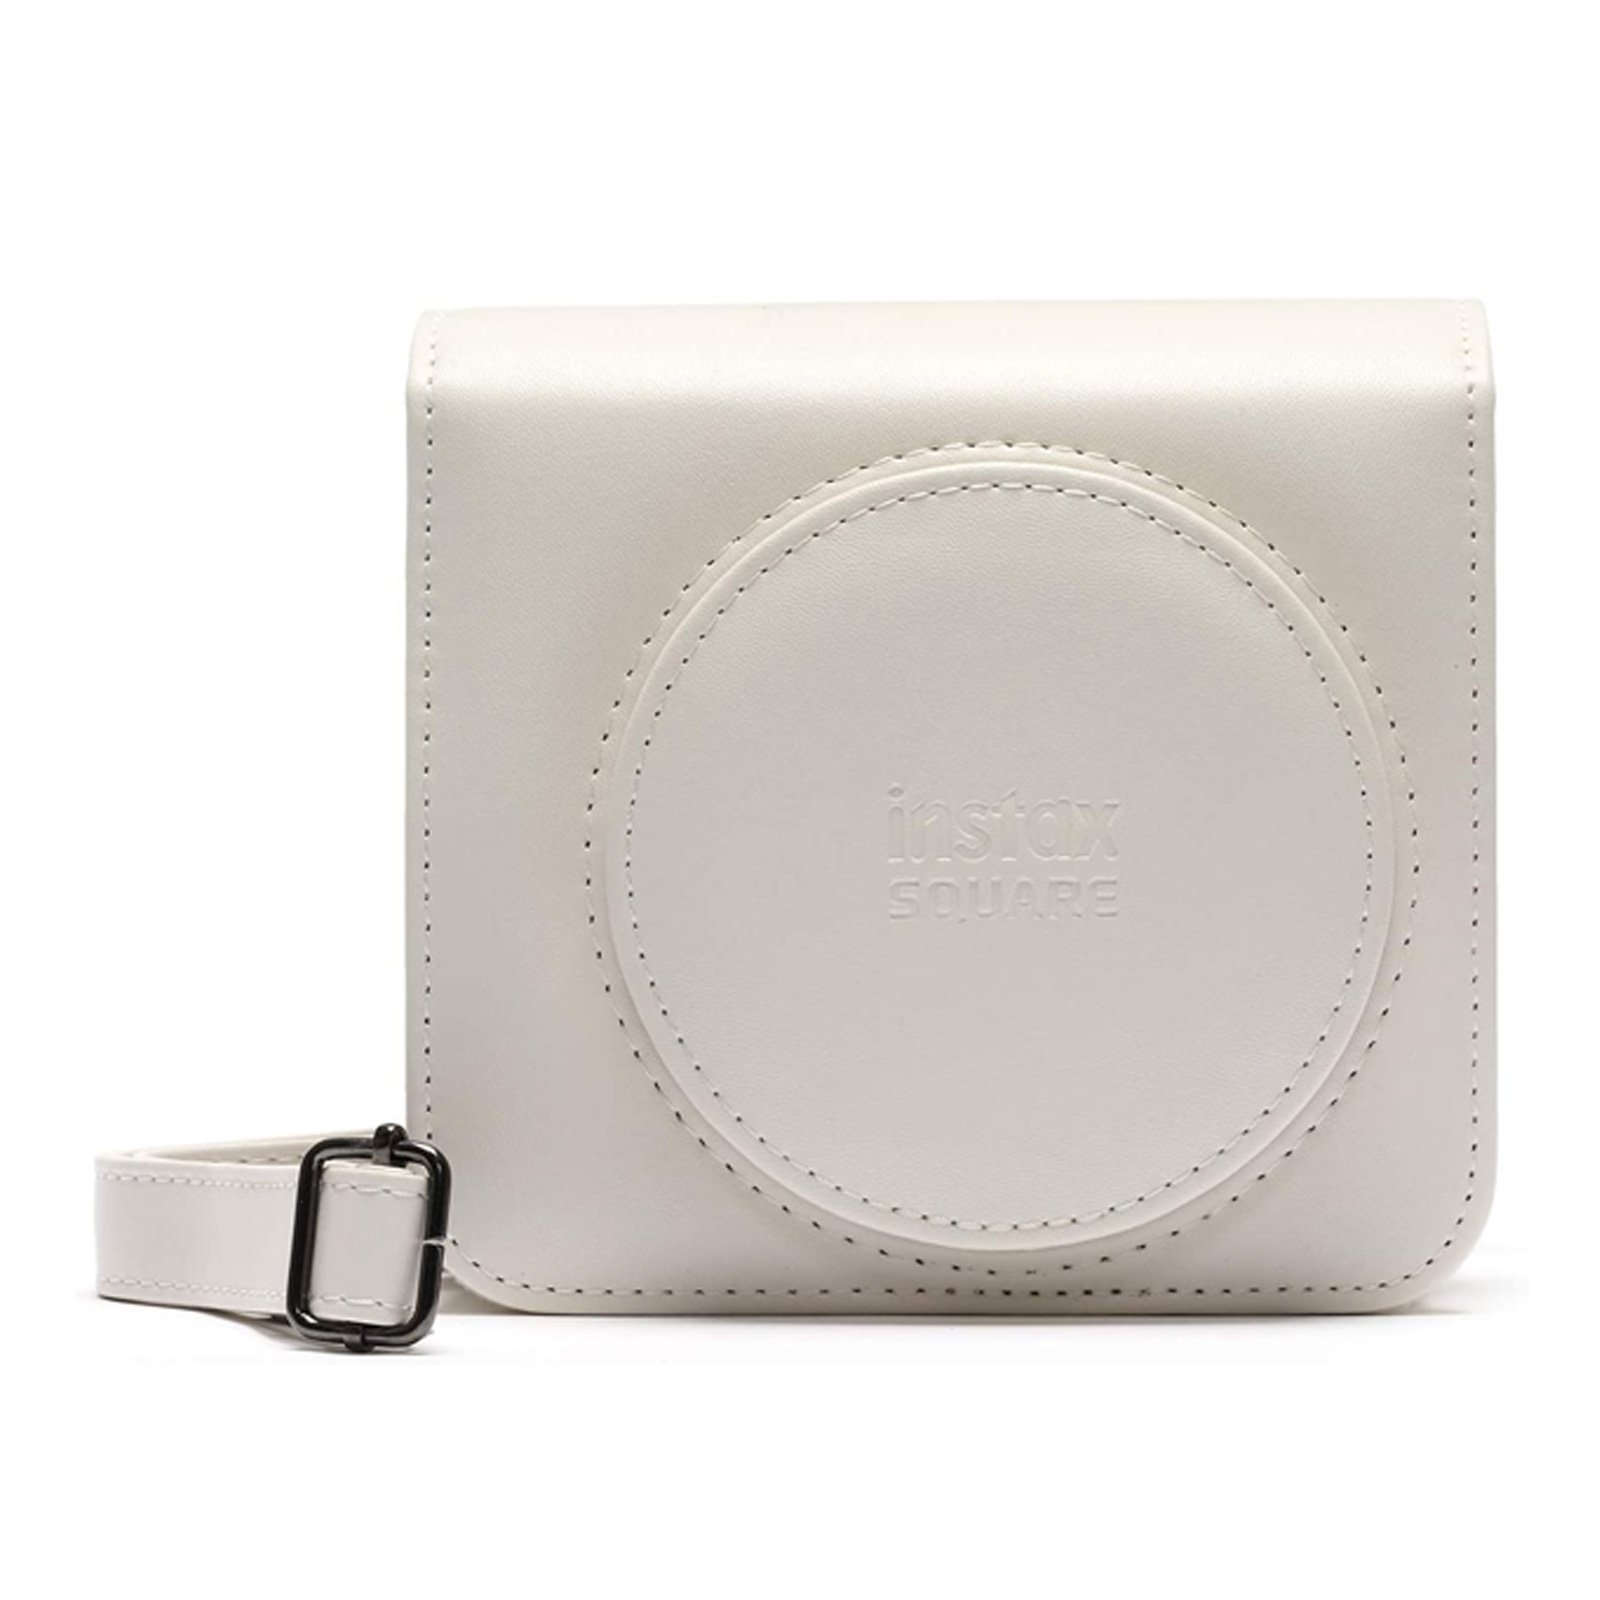 Fujifilm SQ1 Kamera Tasche mit Schultergurt Chalk White